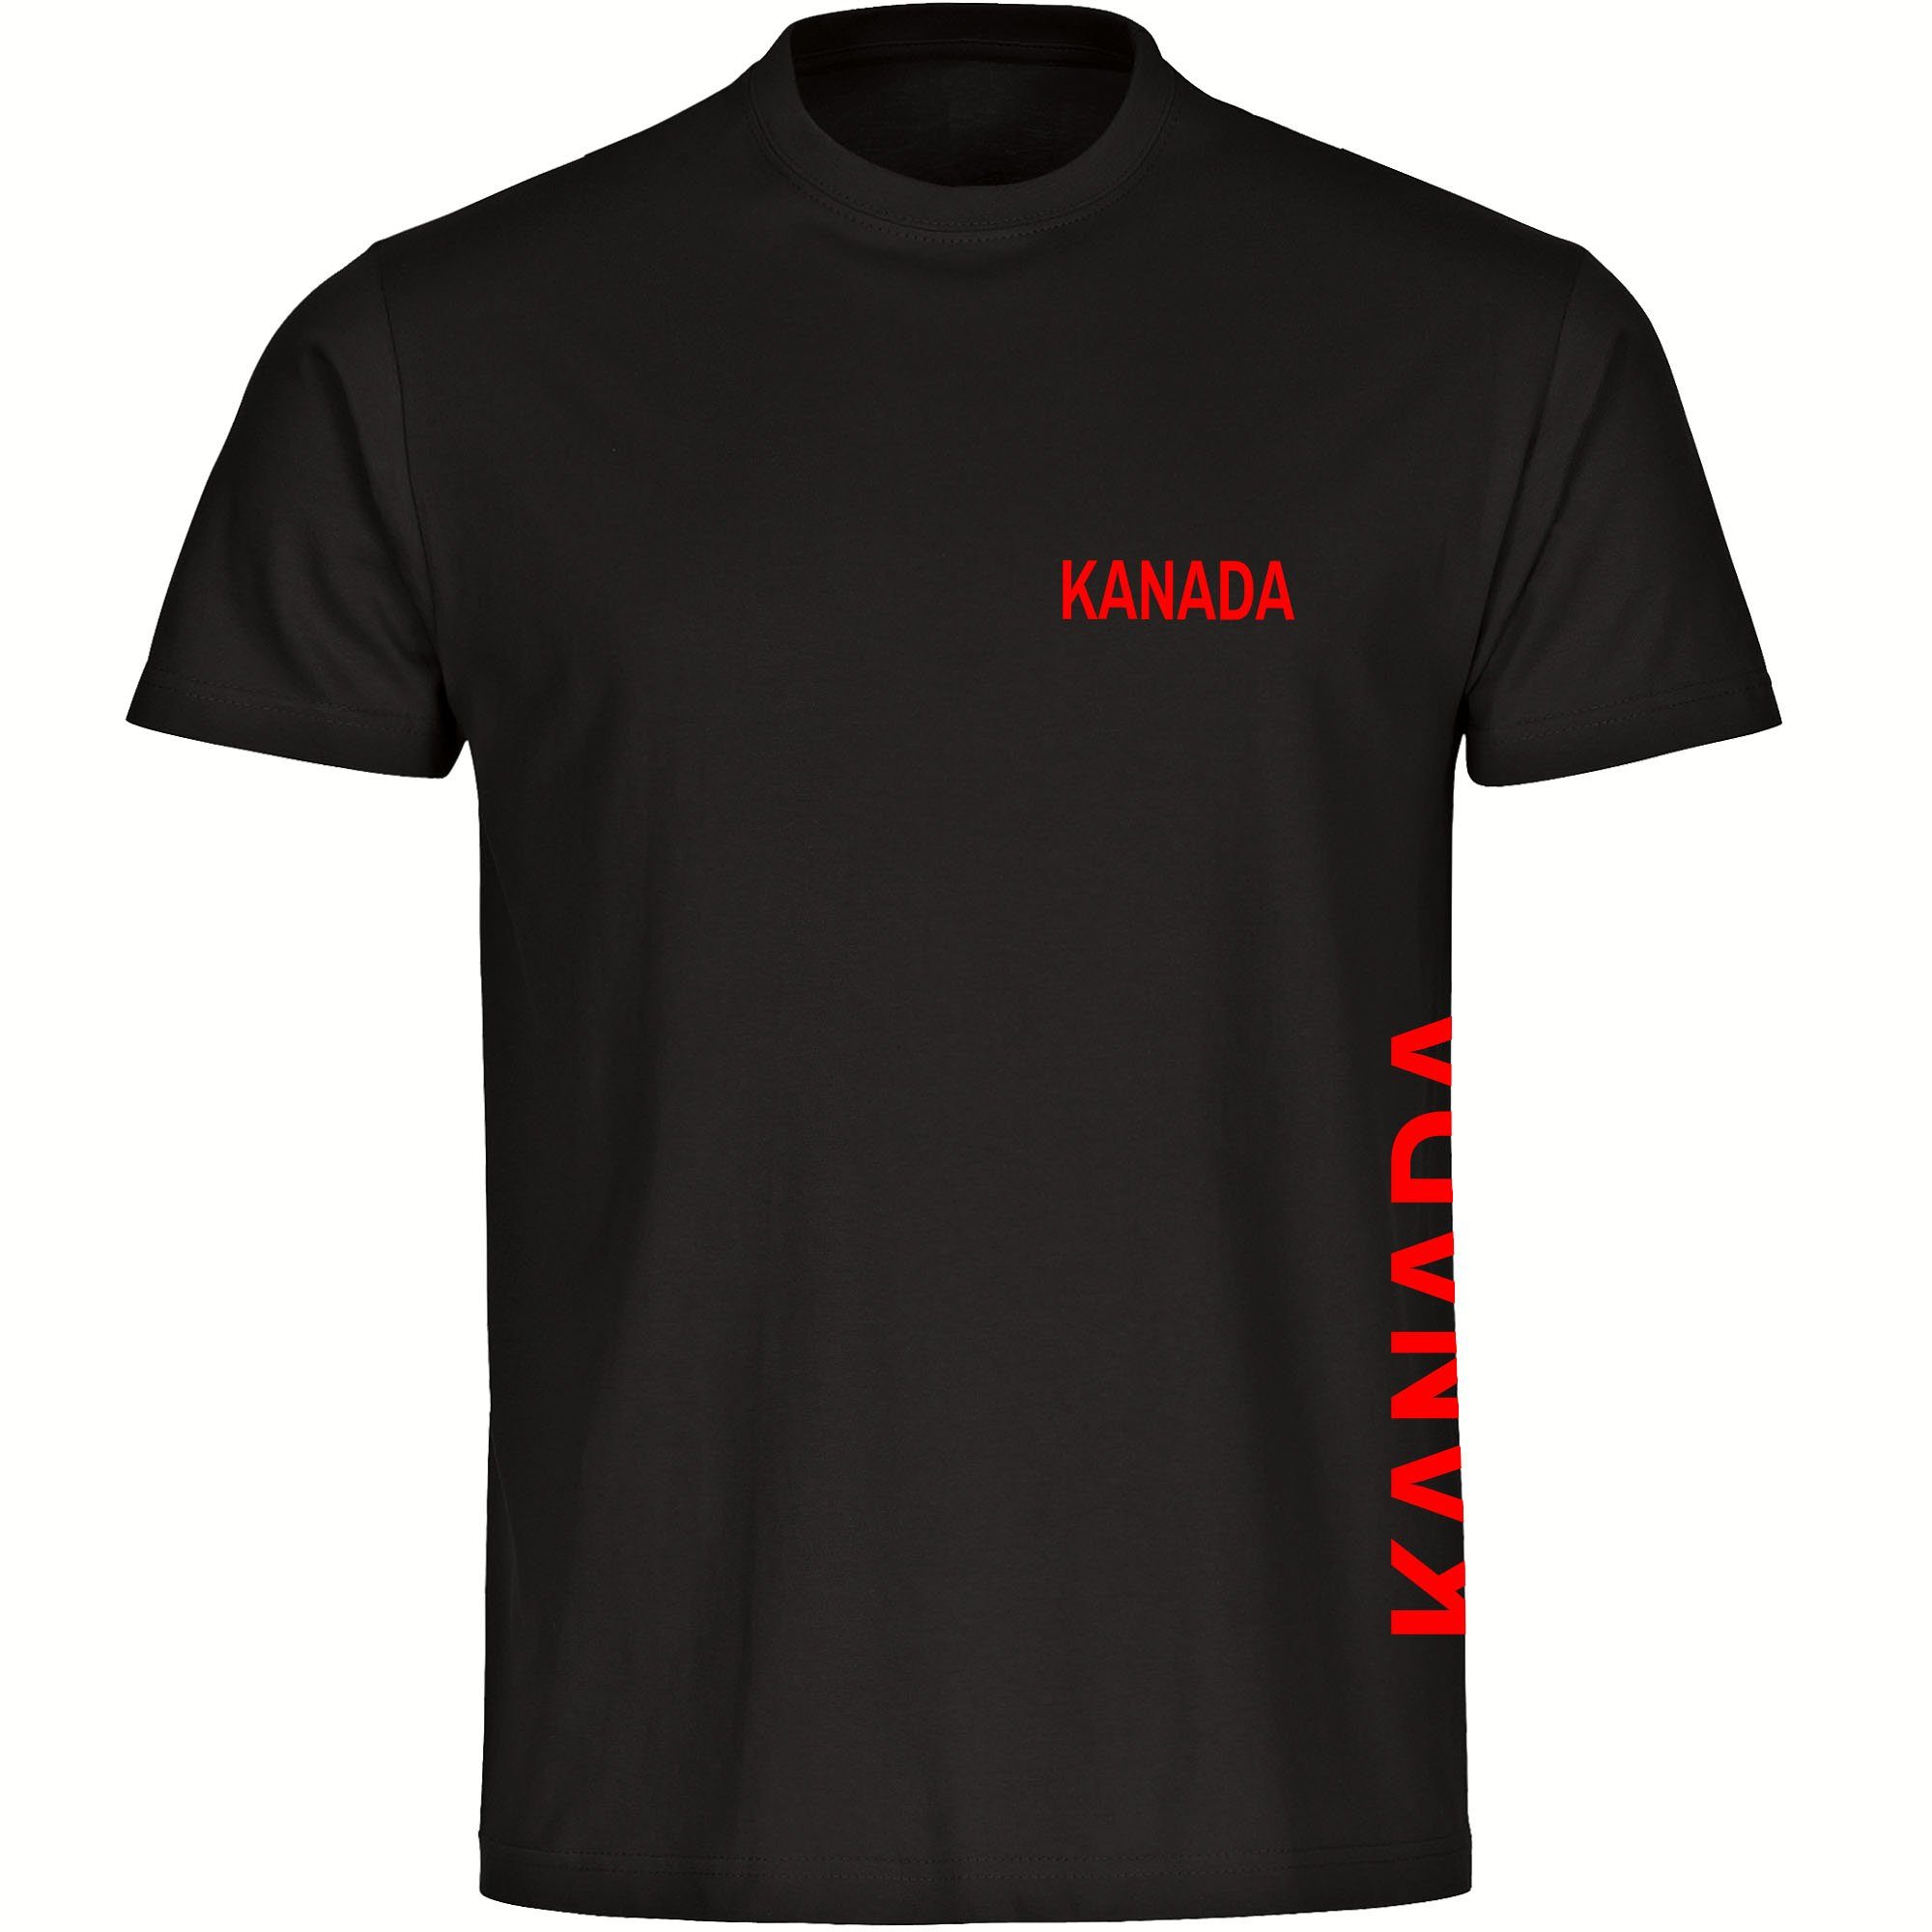 multifanshop T-Shirt Herren Kanada - Brust & Seite - Männer